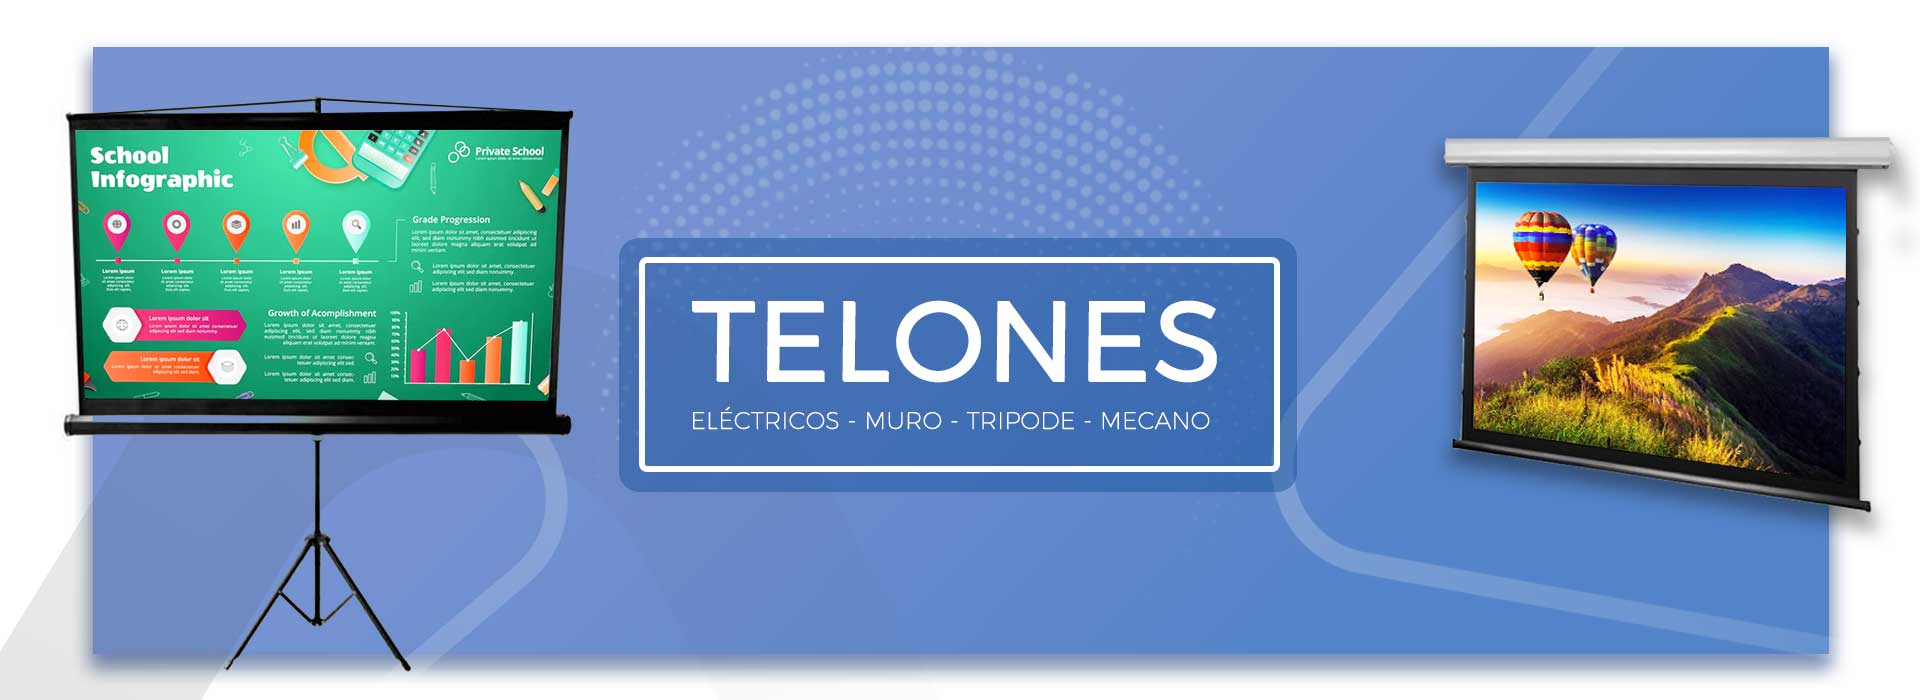 telones para proyección